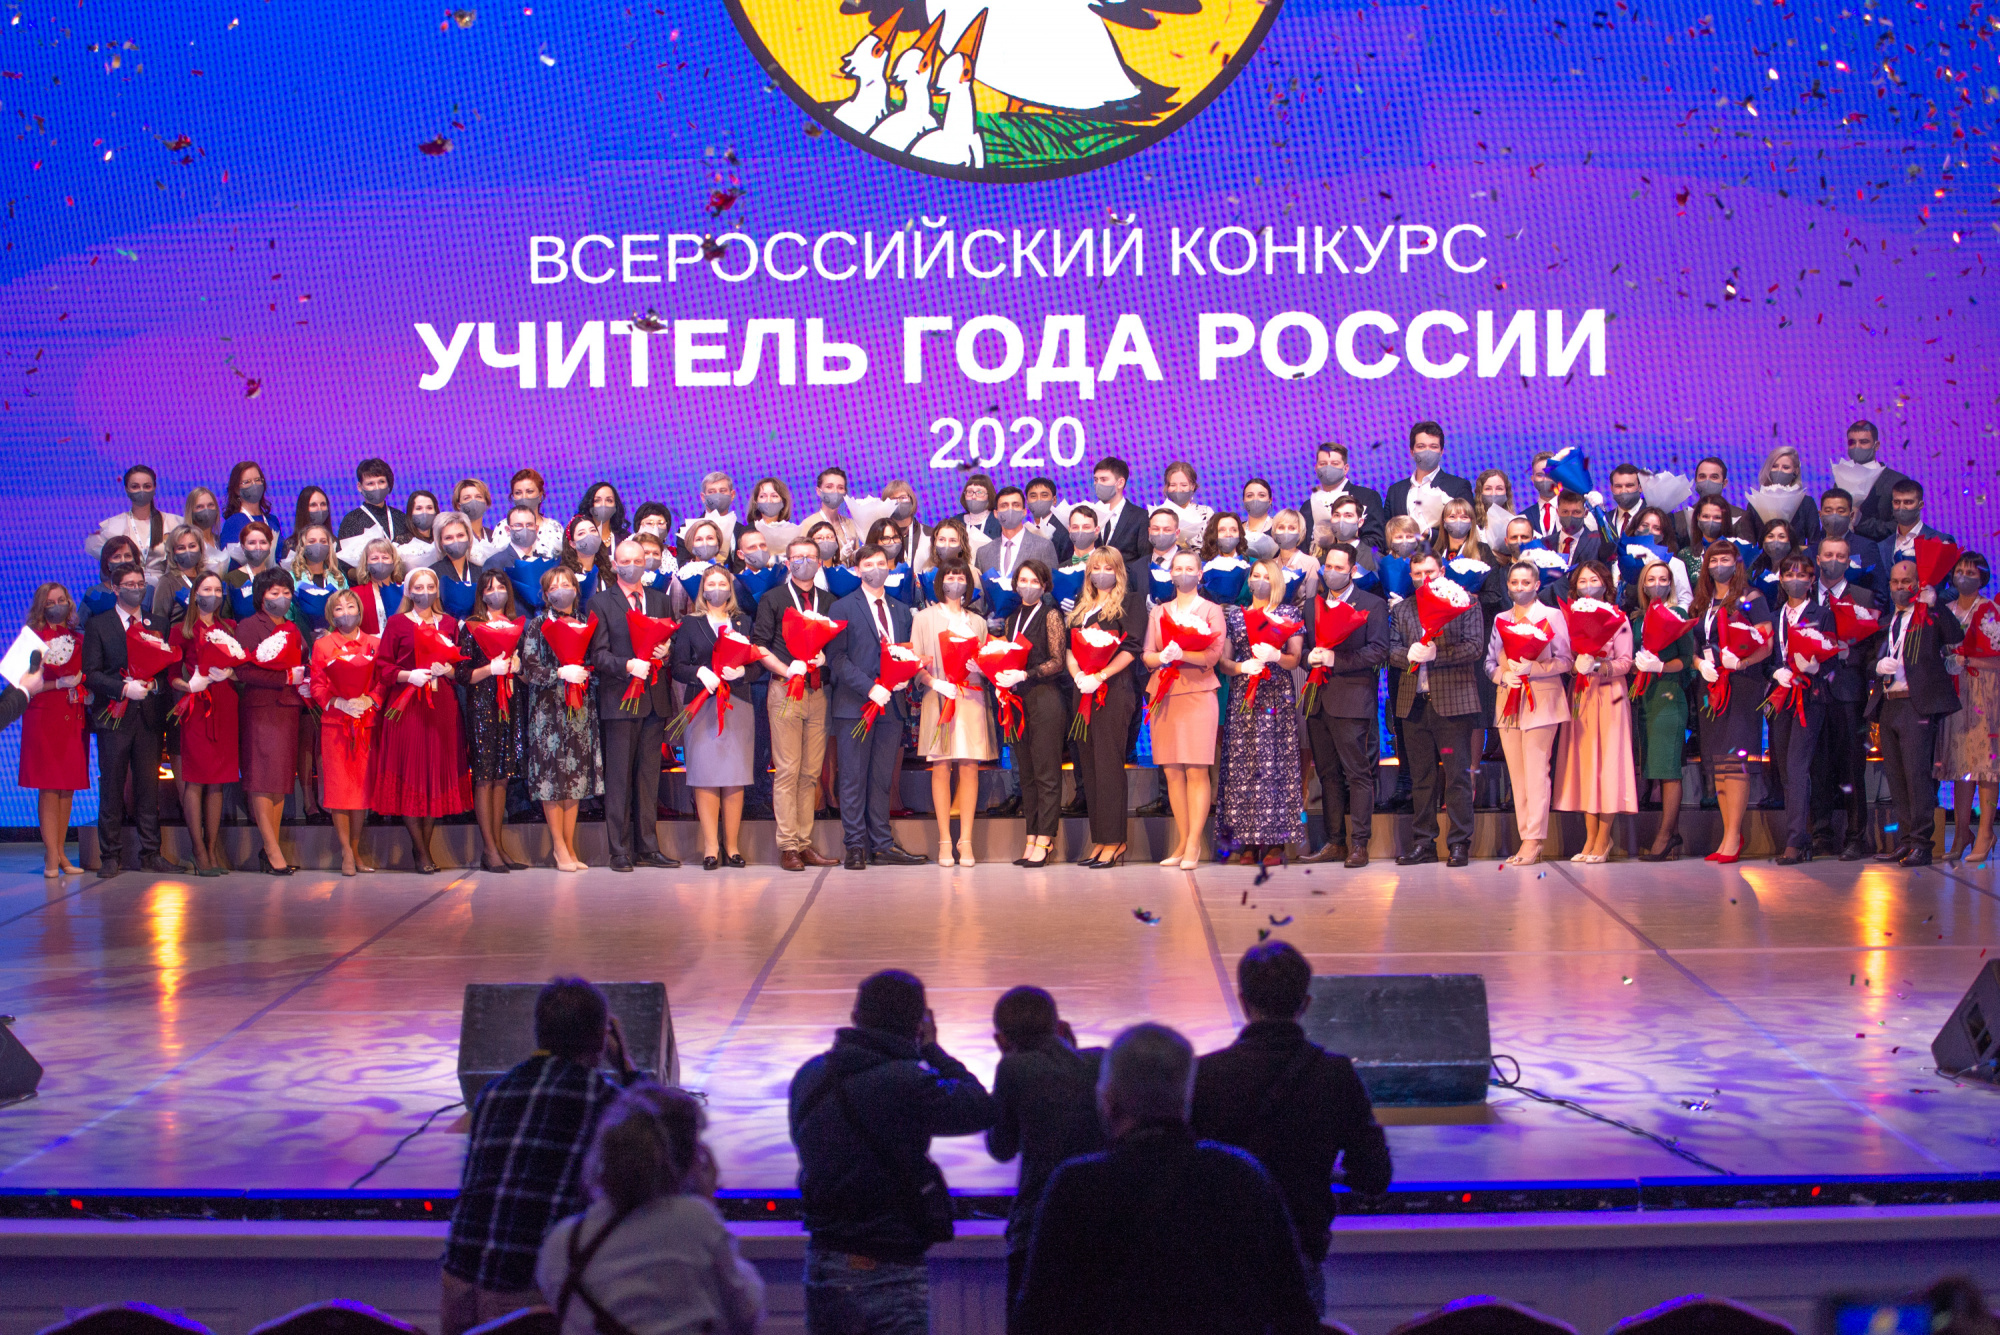 Педагог Мария Игнатенко из Кузбасса представляет регион на Всероссийском конкурсе «Учитель года России – 2020»